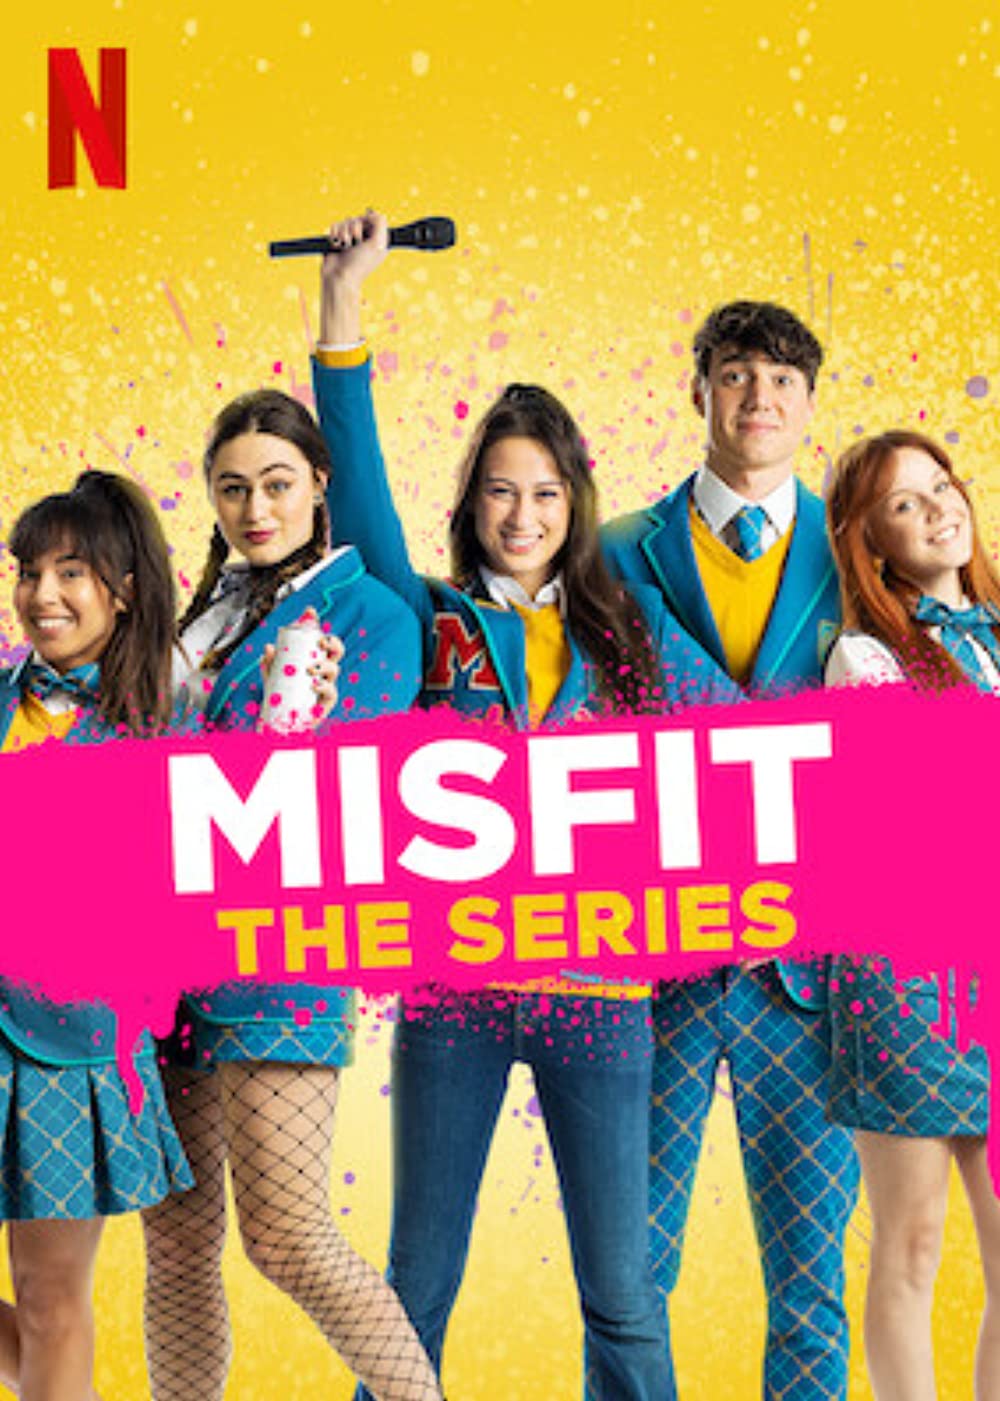 ดูหนังออนไลน์ MisFit The Series (2021) Episode1 มิสฟิช เดอะ ซีรี่ย์ ตอนที่ 1